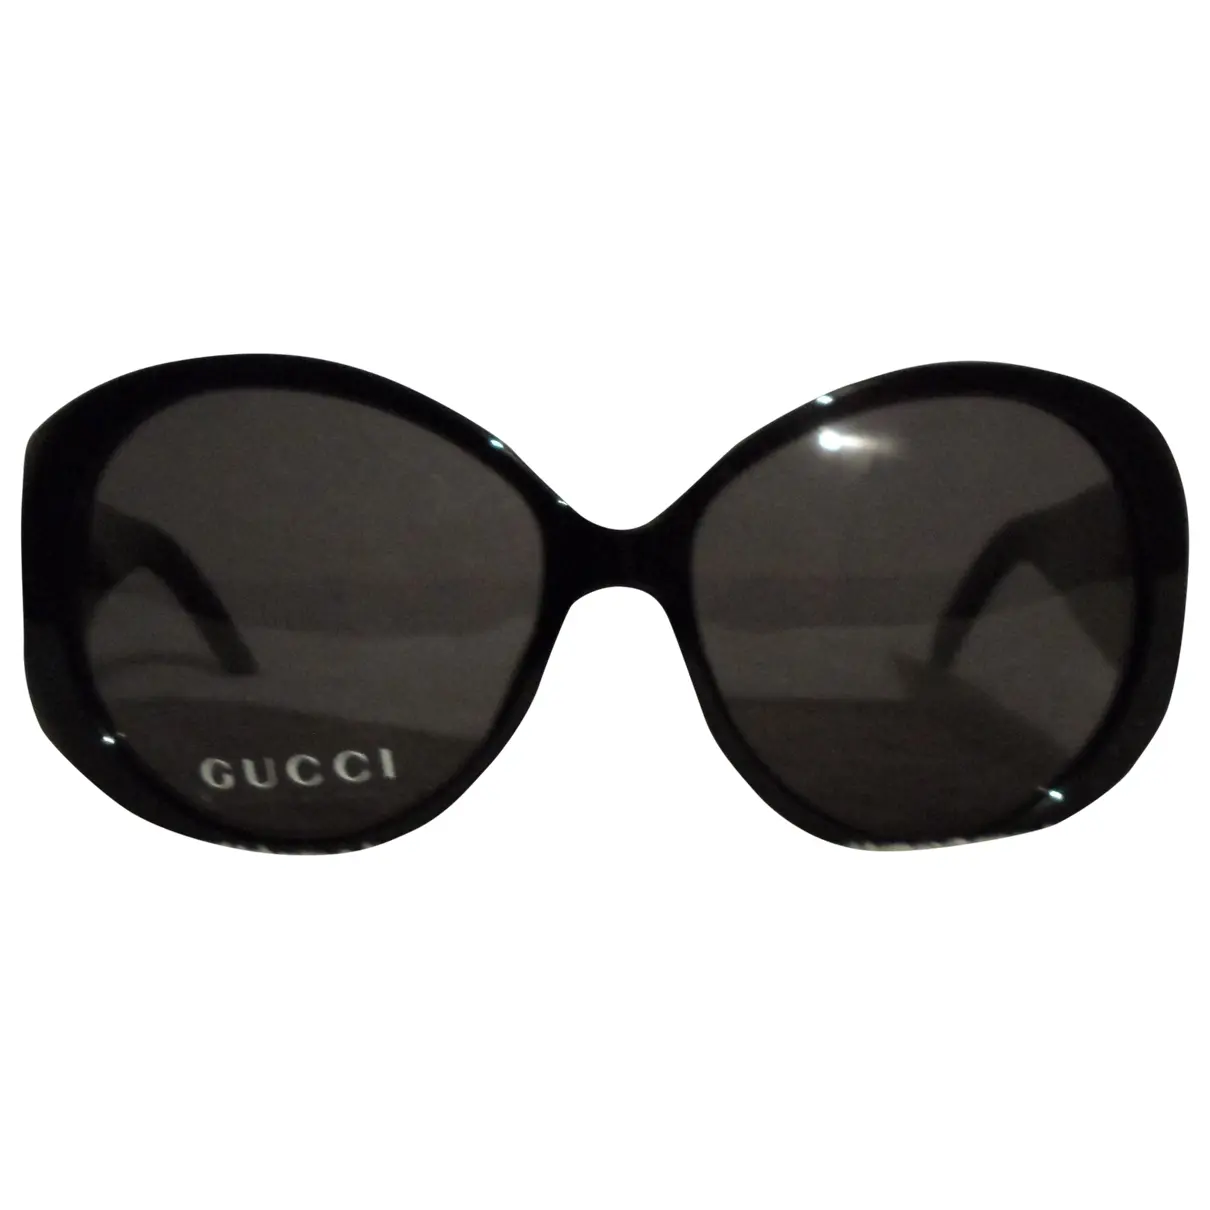 Black Sunglasses Gucci